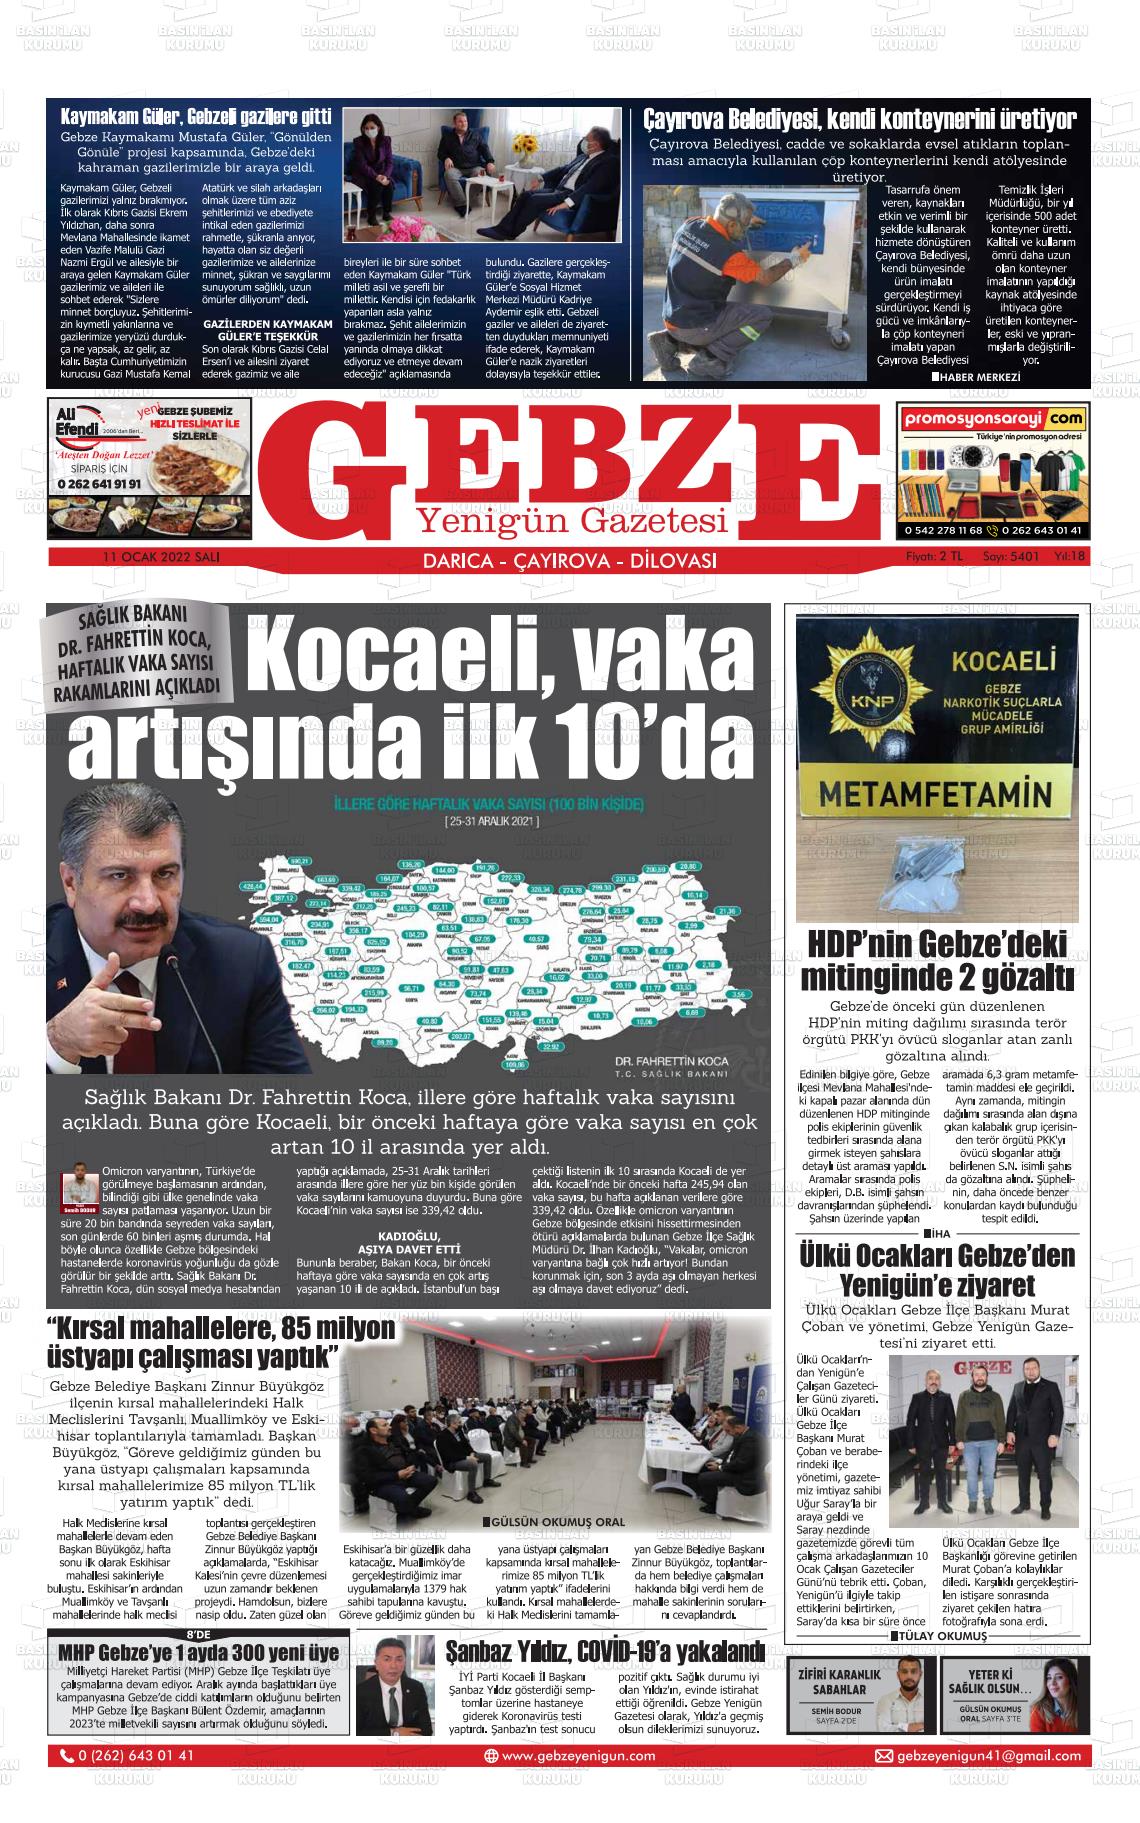 11 Ocak 2022 Gebze Yenigün Gazete Manşeti